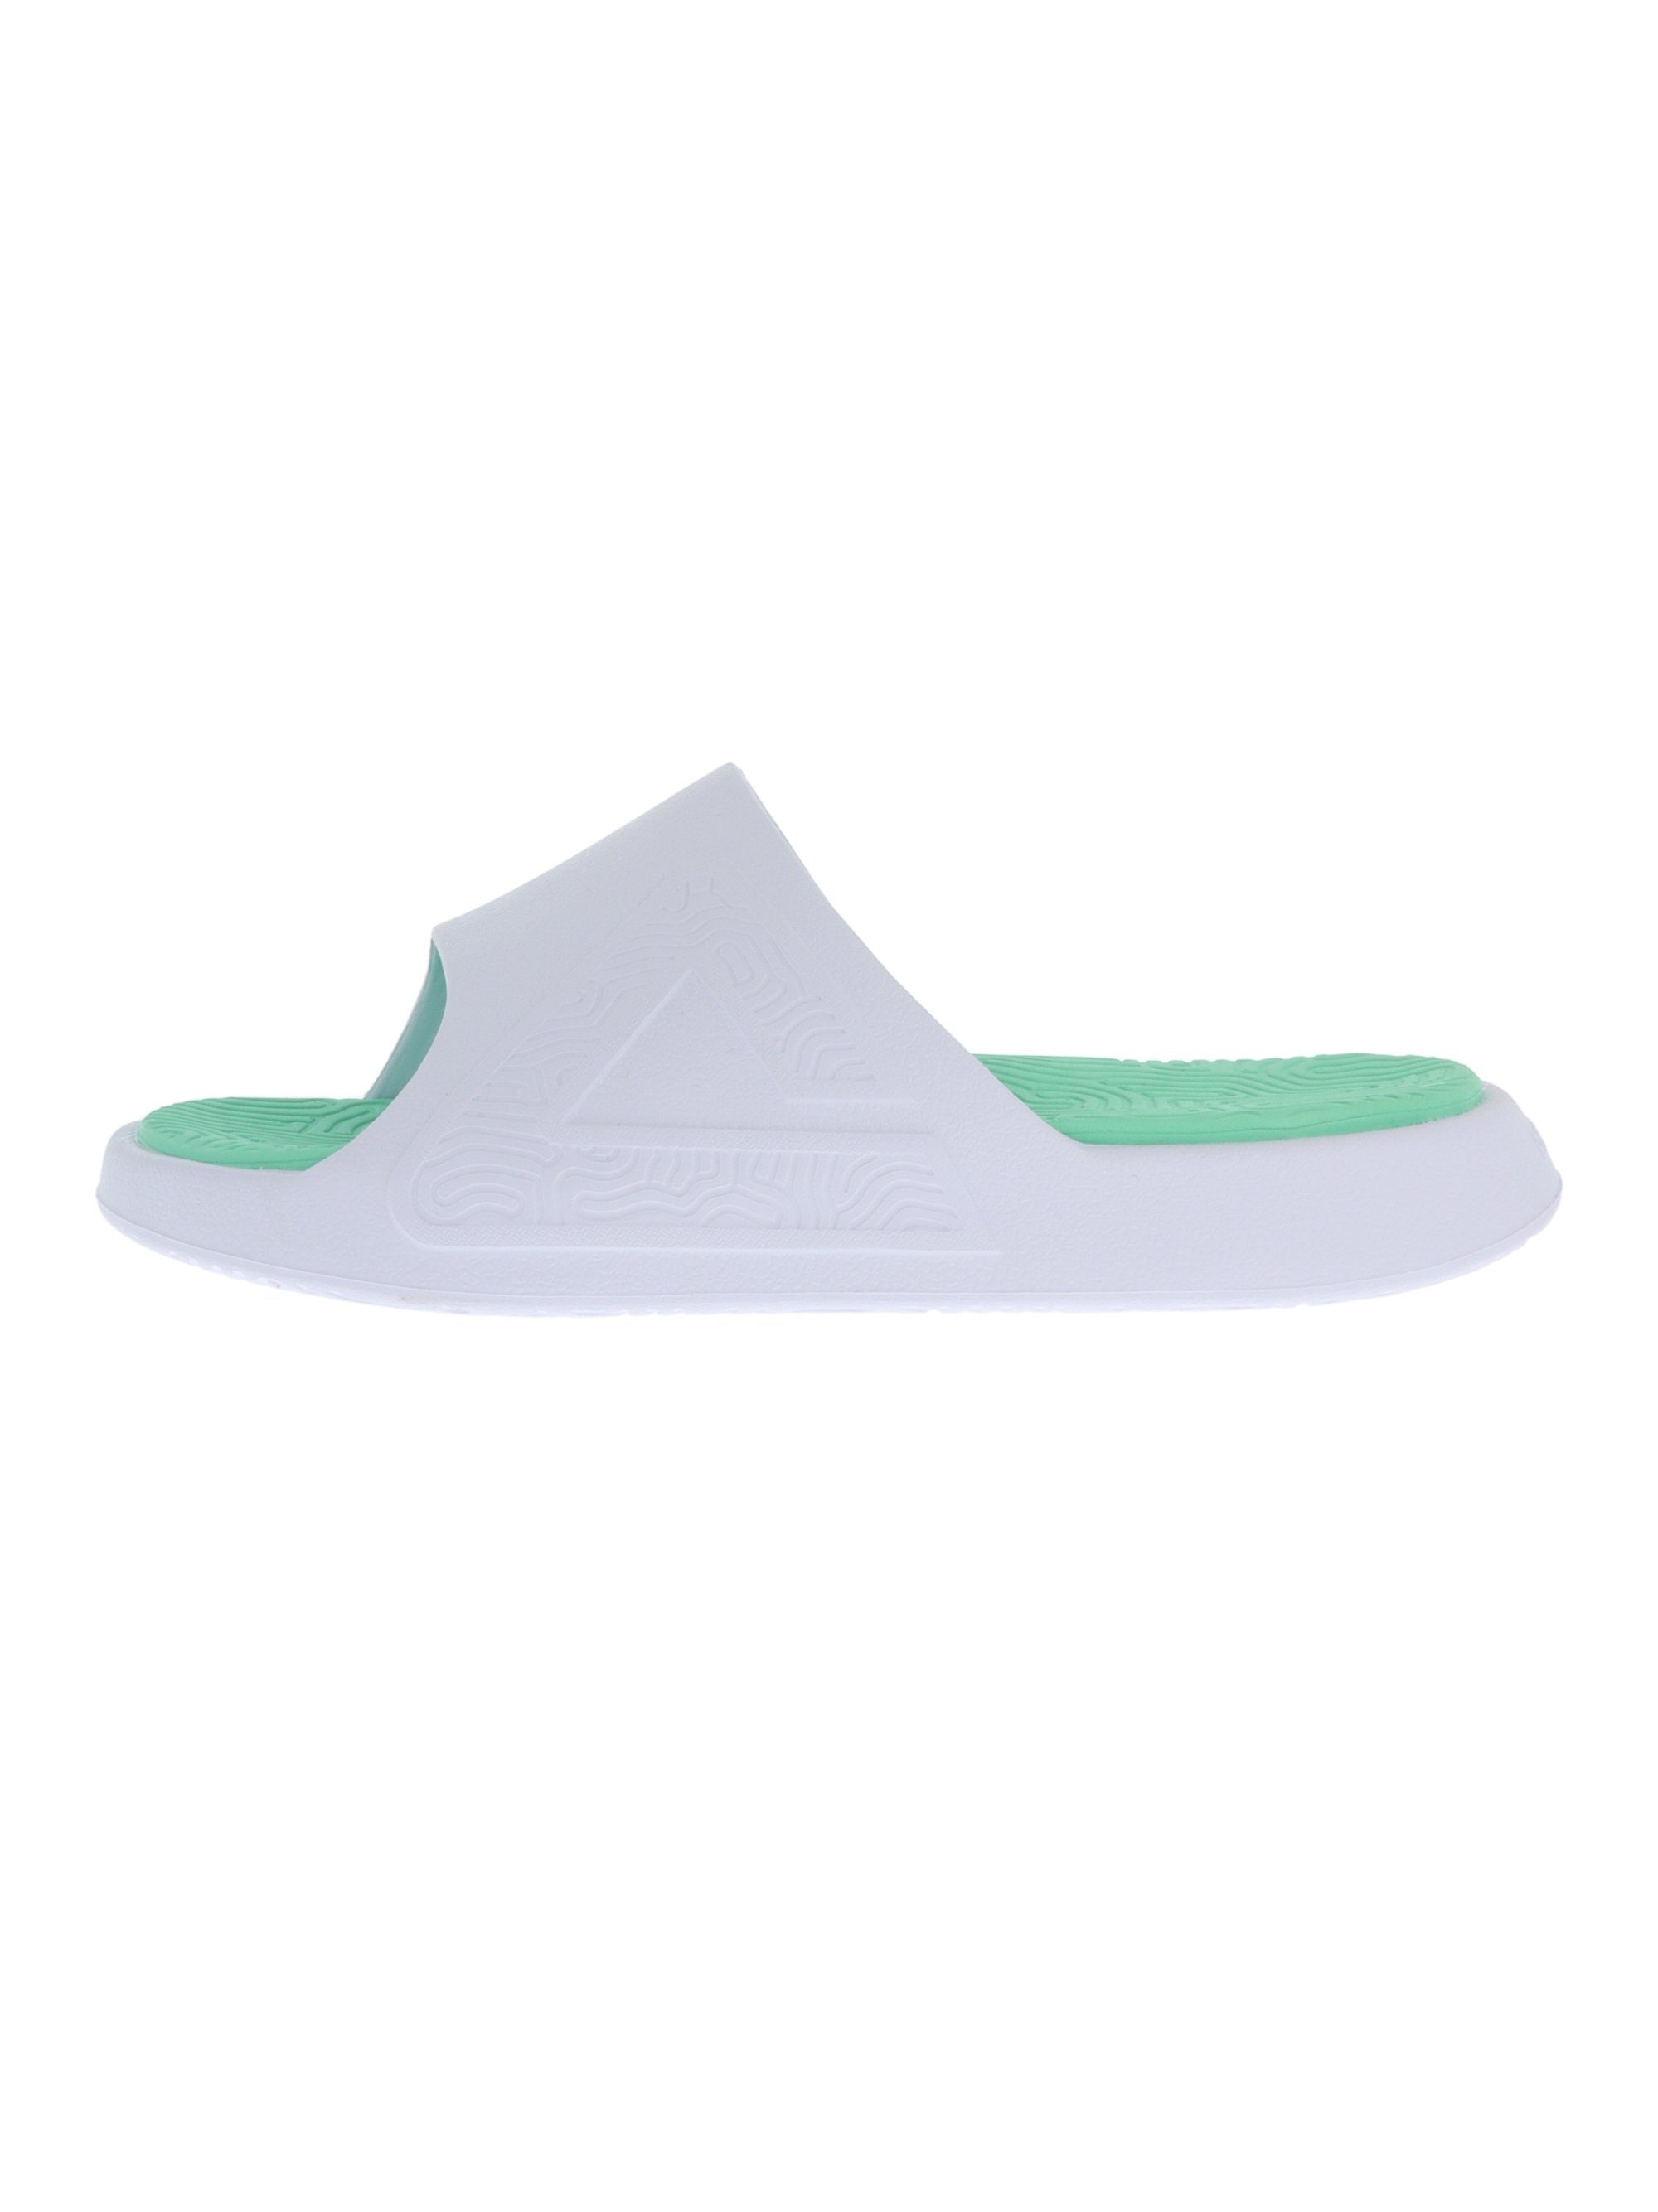 PEAK TaiChi Slipper mit innovativer Badeschuh Gel-Zwischensohle grün-weiß